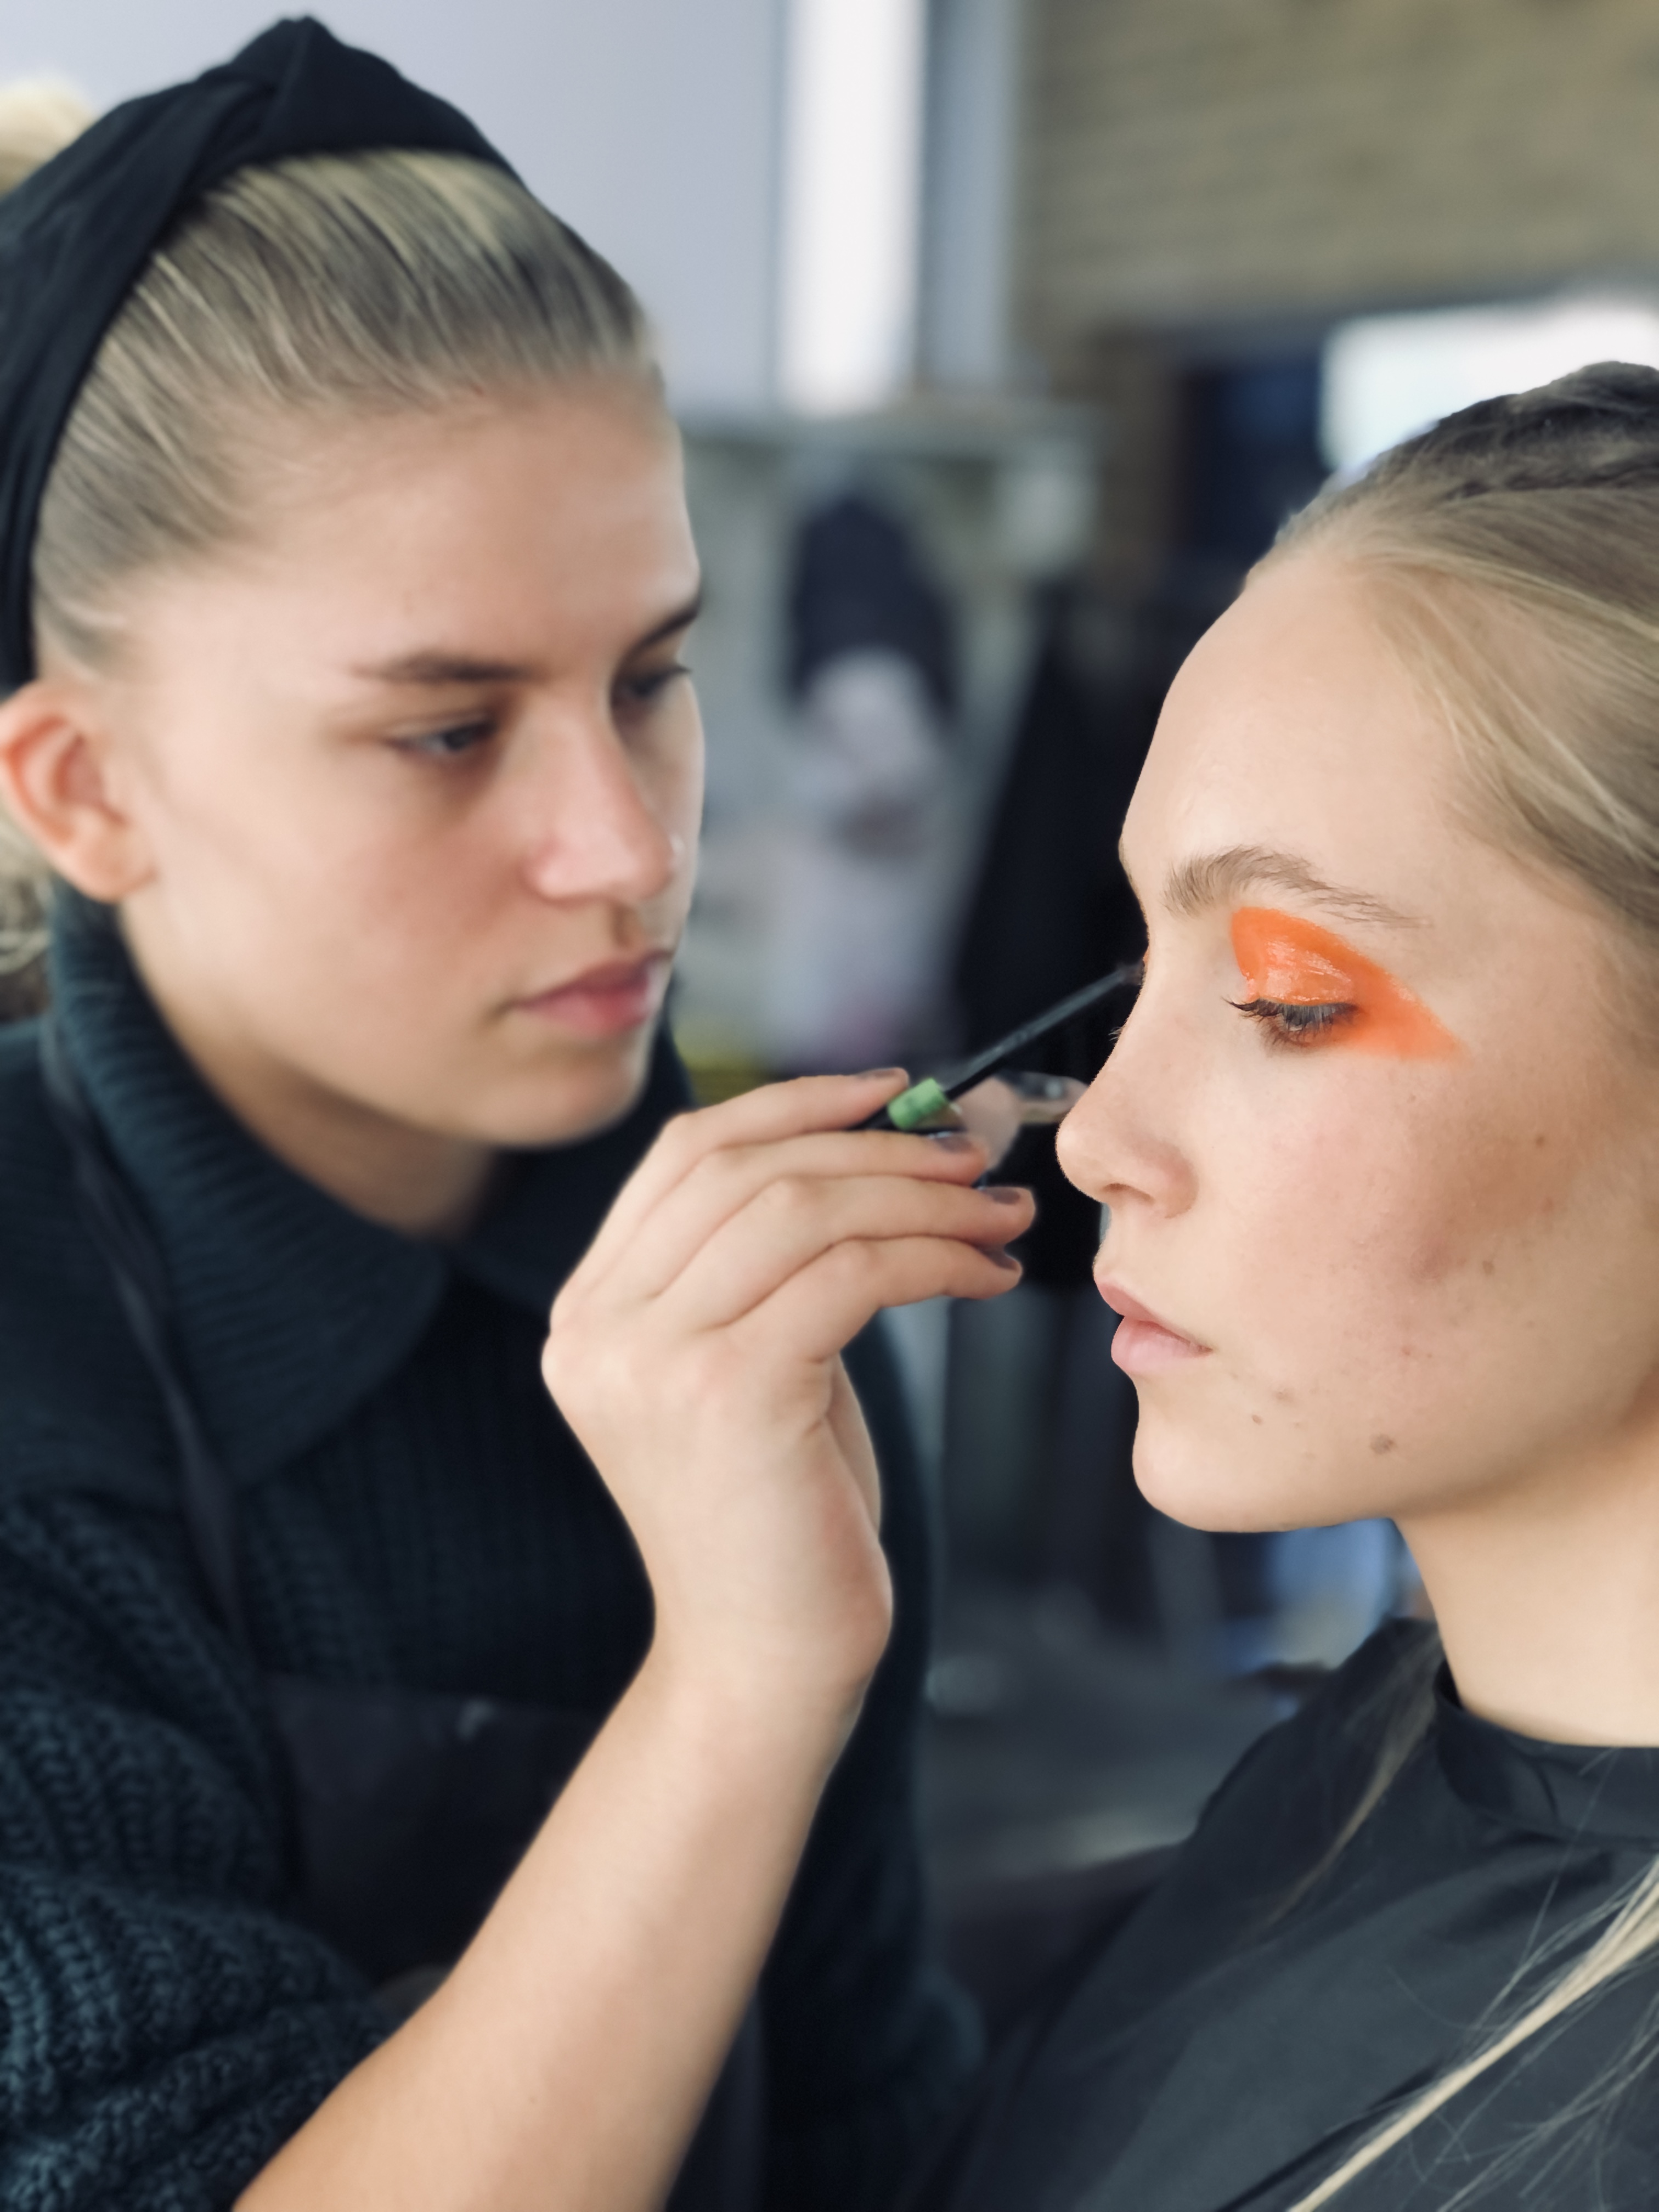 En person målar orange ögonsminking på en modell.